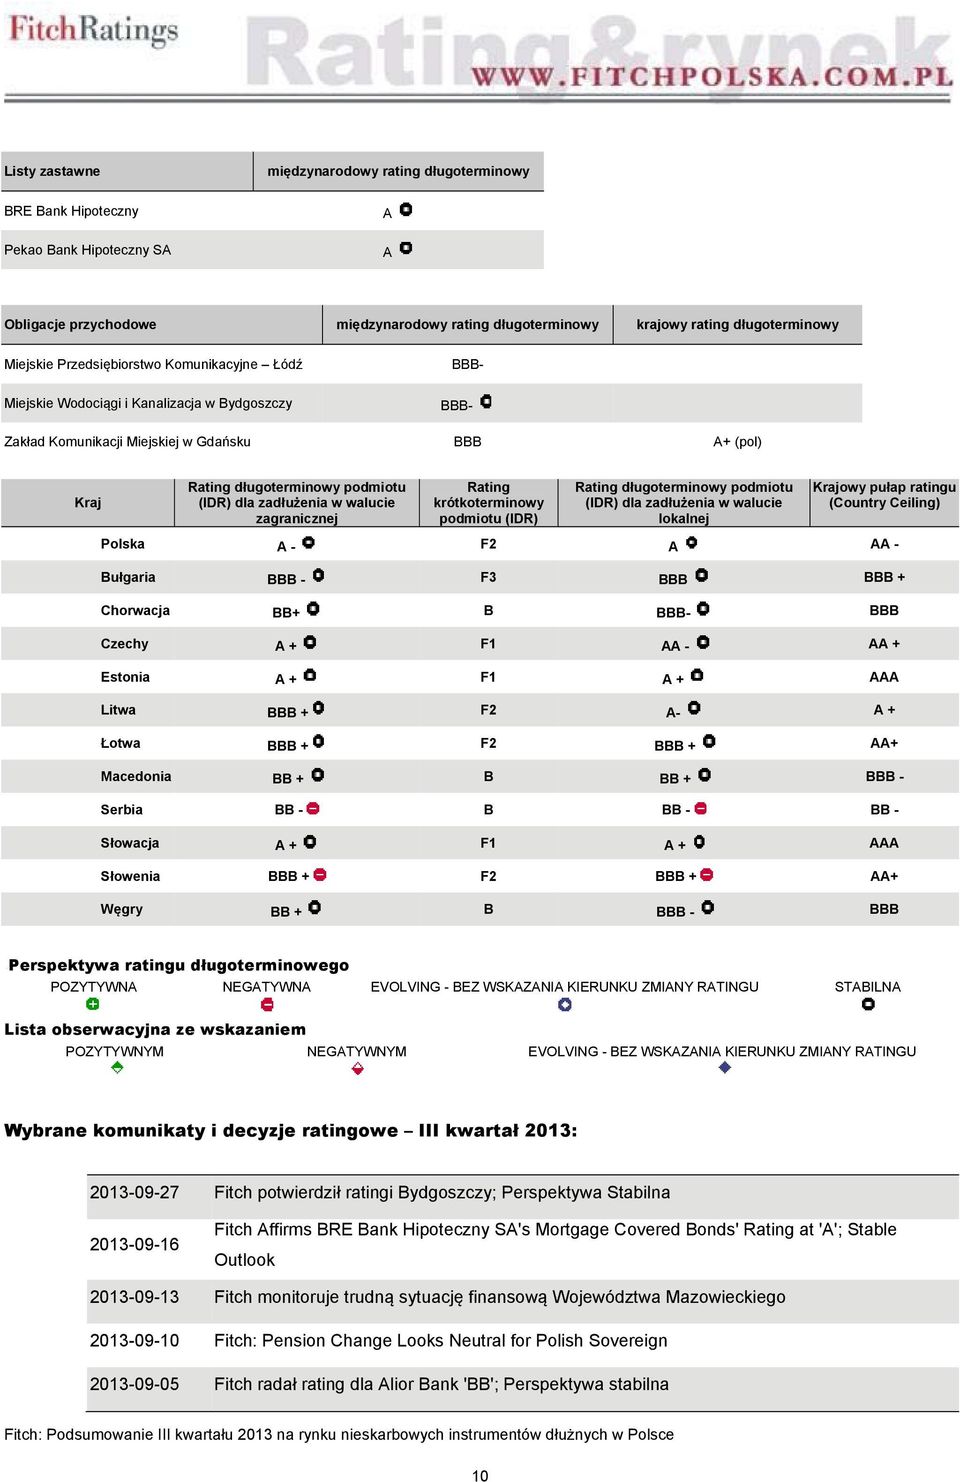 zadłużenia w walucie zagranicznej Rating krótkoterminowy podmiotu (IDR) Rating długoterminowy podmiotu (IDR) dla zadłużenia w walucie lokalnej Krajowy pułap ratingu (Country Ceiling) Polska A - F2 A